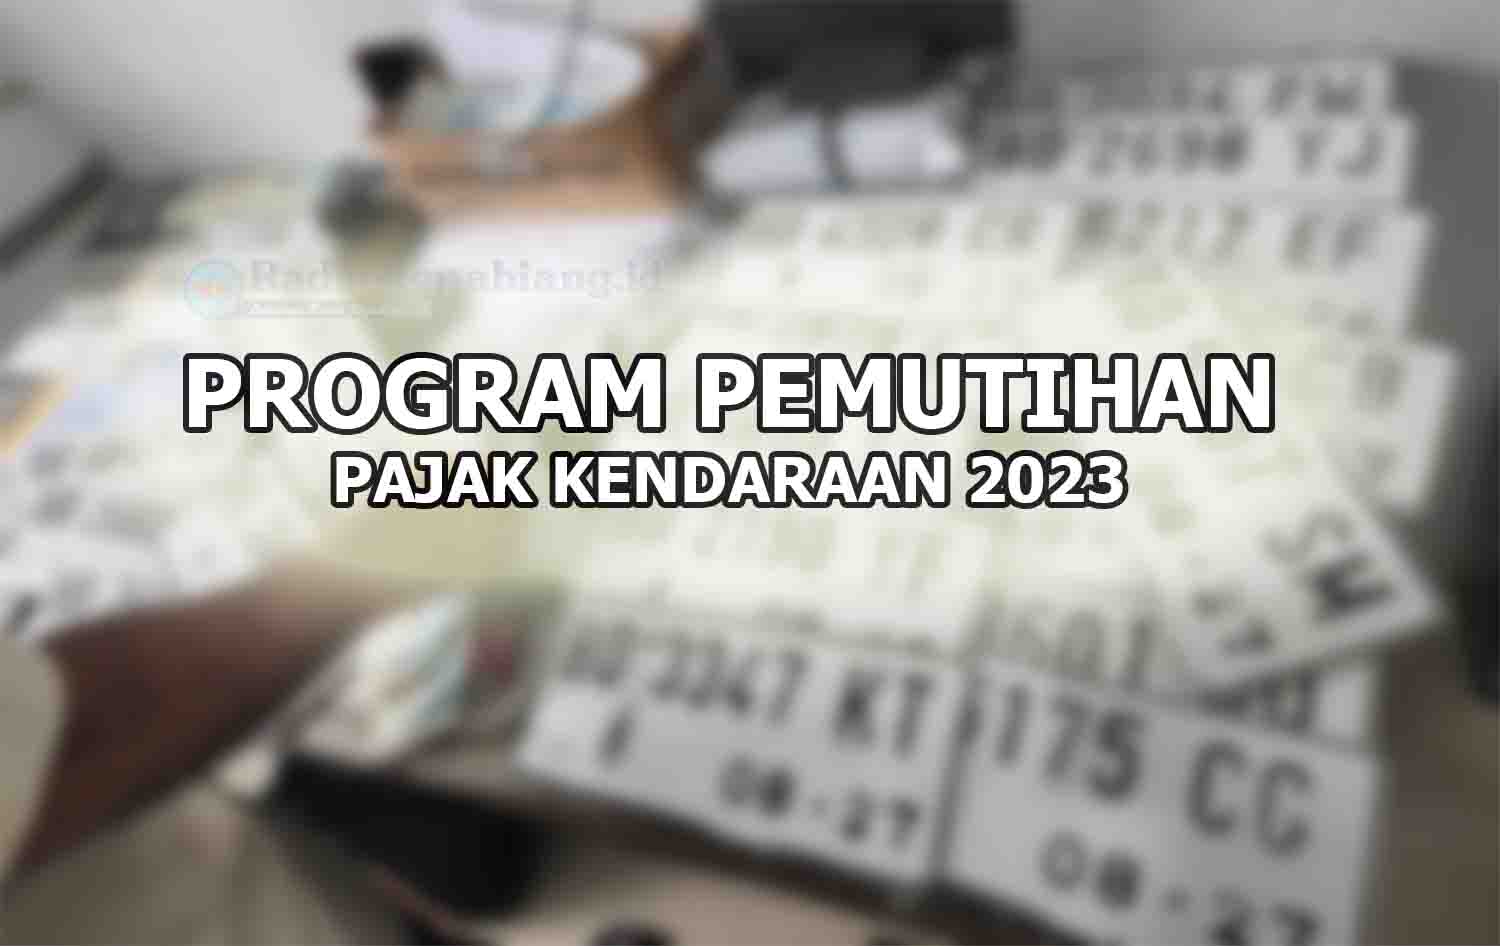 RESMI! Ini Jadwal Program Pemutihan Pajak Kendaraan Provinsi Bengkulu Berdasarkan Keputusan Gubernur Bengkulu